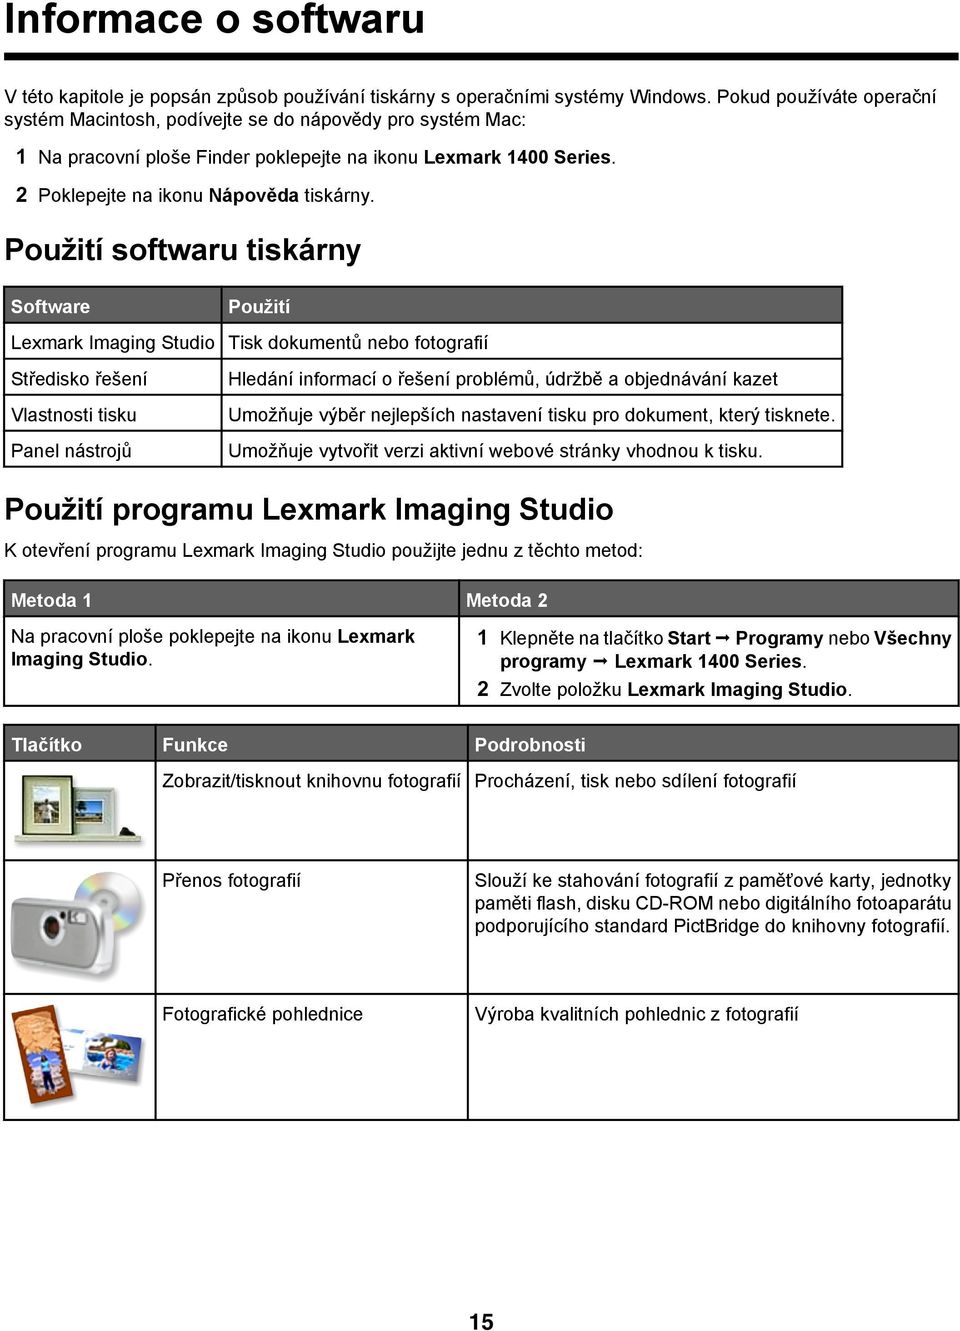 Použití softwaru tiskárny Software Použití Lexmark Imaging Studio Tisk dokumentů nebo fotografií Středisko řešení Vlastnosti tisku Panel nástrojů Hledání informací o řešení problémů, údržbě a